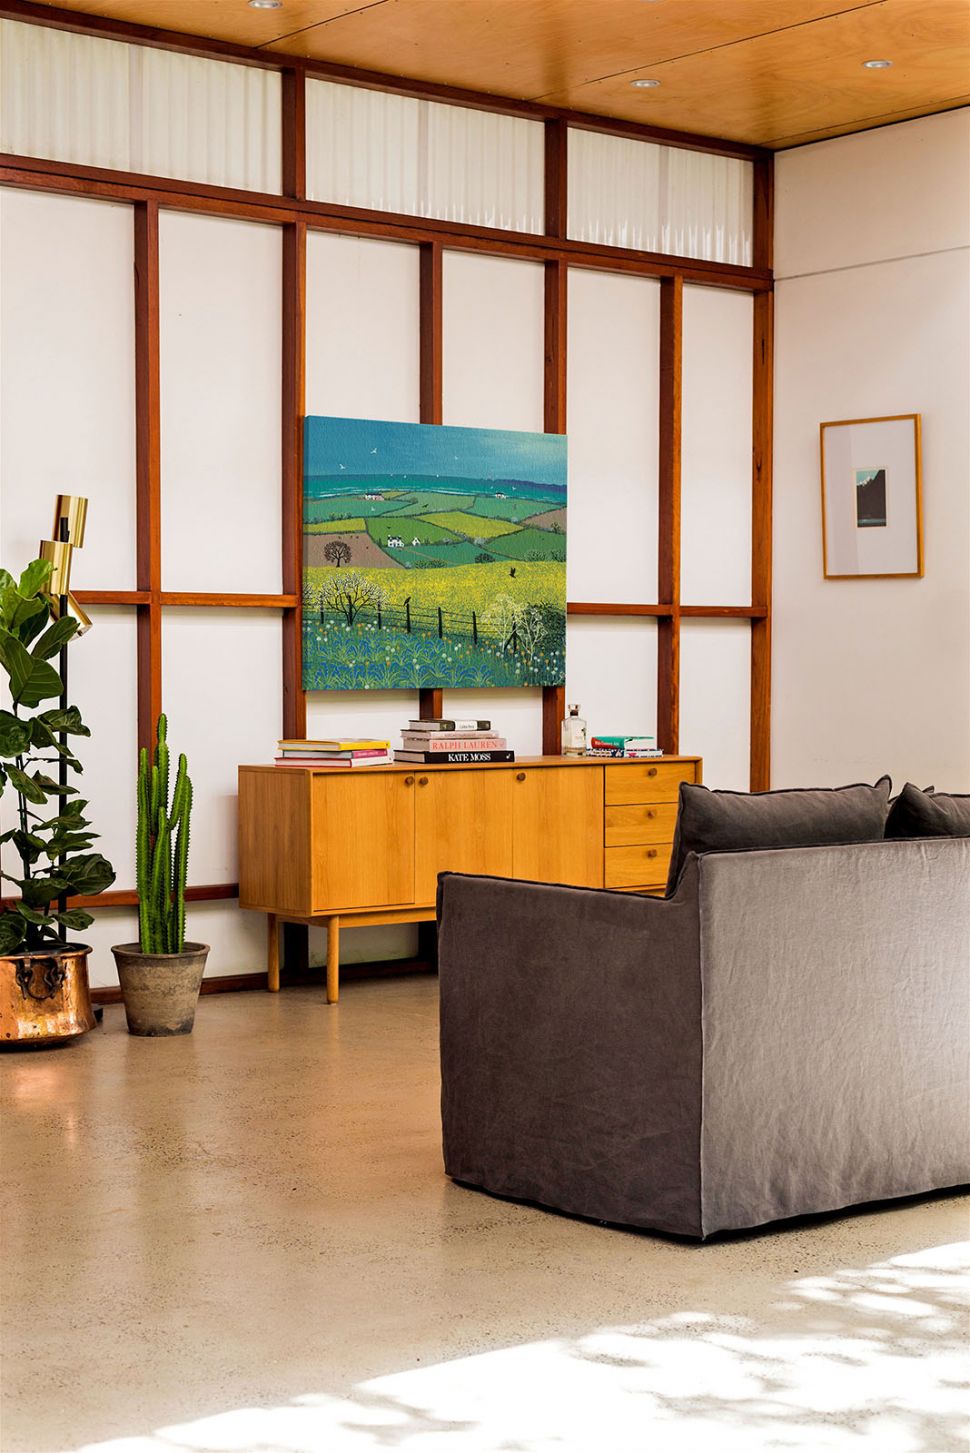 Canvas przedstawiający łąki i pola o nazwie Coastal View wiszący w salonie nad drewnianą szafką